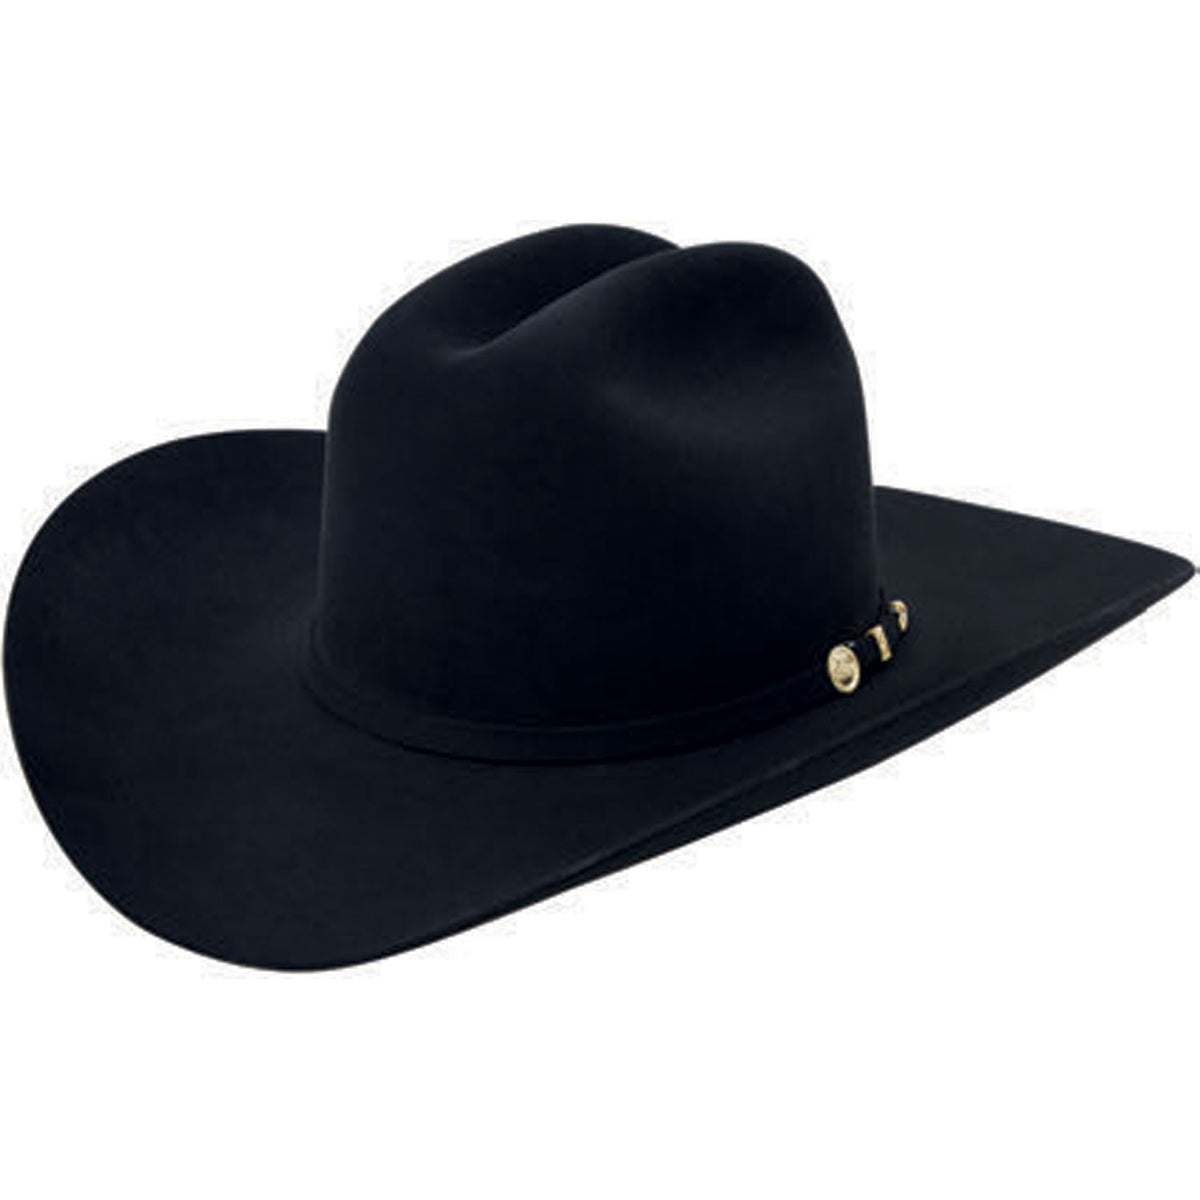 Stetson El Presidente 100X Felt Cowboy Hat